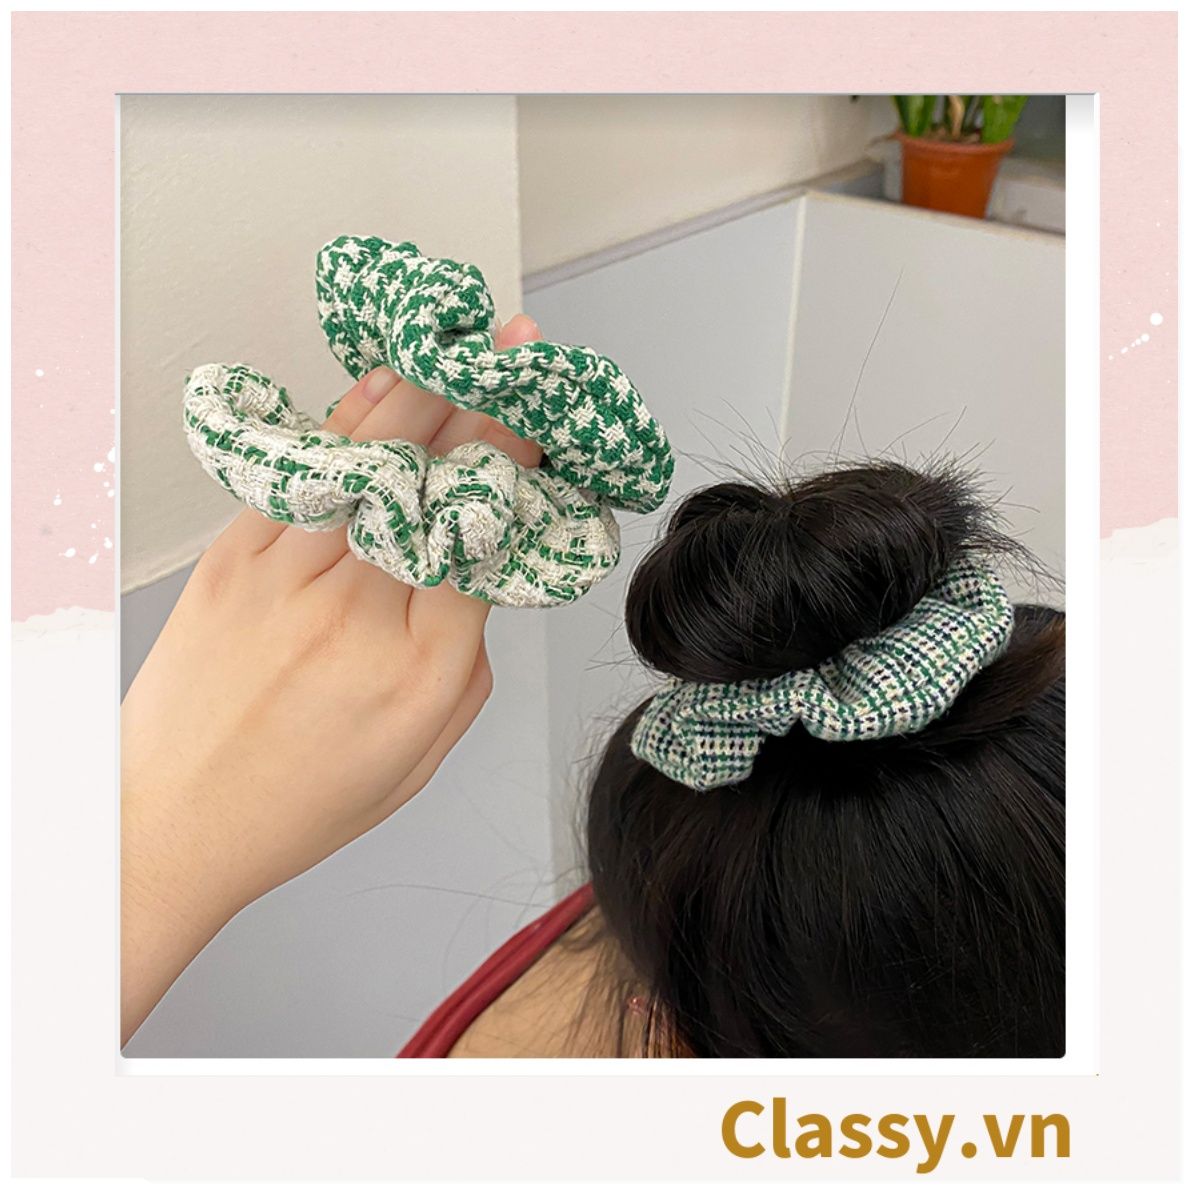  Scrunchies cột tóc, buộc tóc vải tuýt to bản, sang trọng,  họa tiết kẻ sọc tông xanh quý phái thanh lịch PK705 